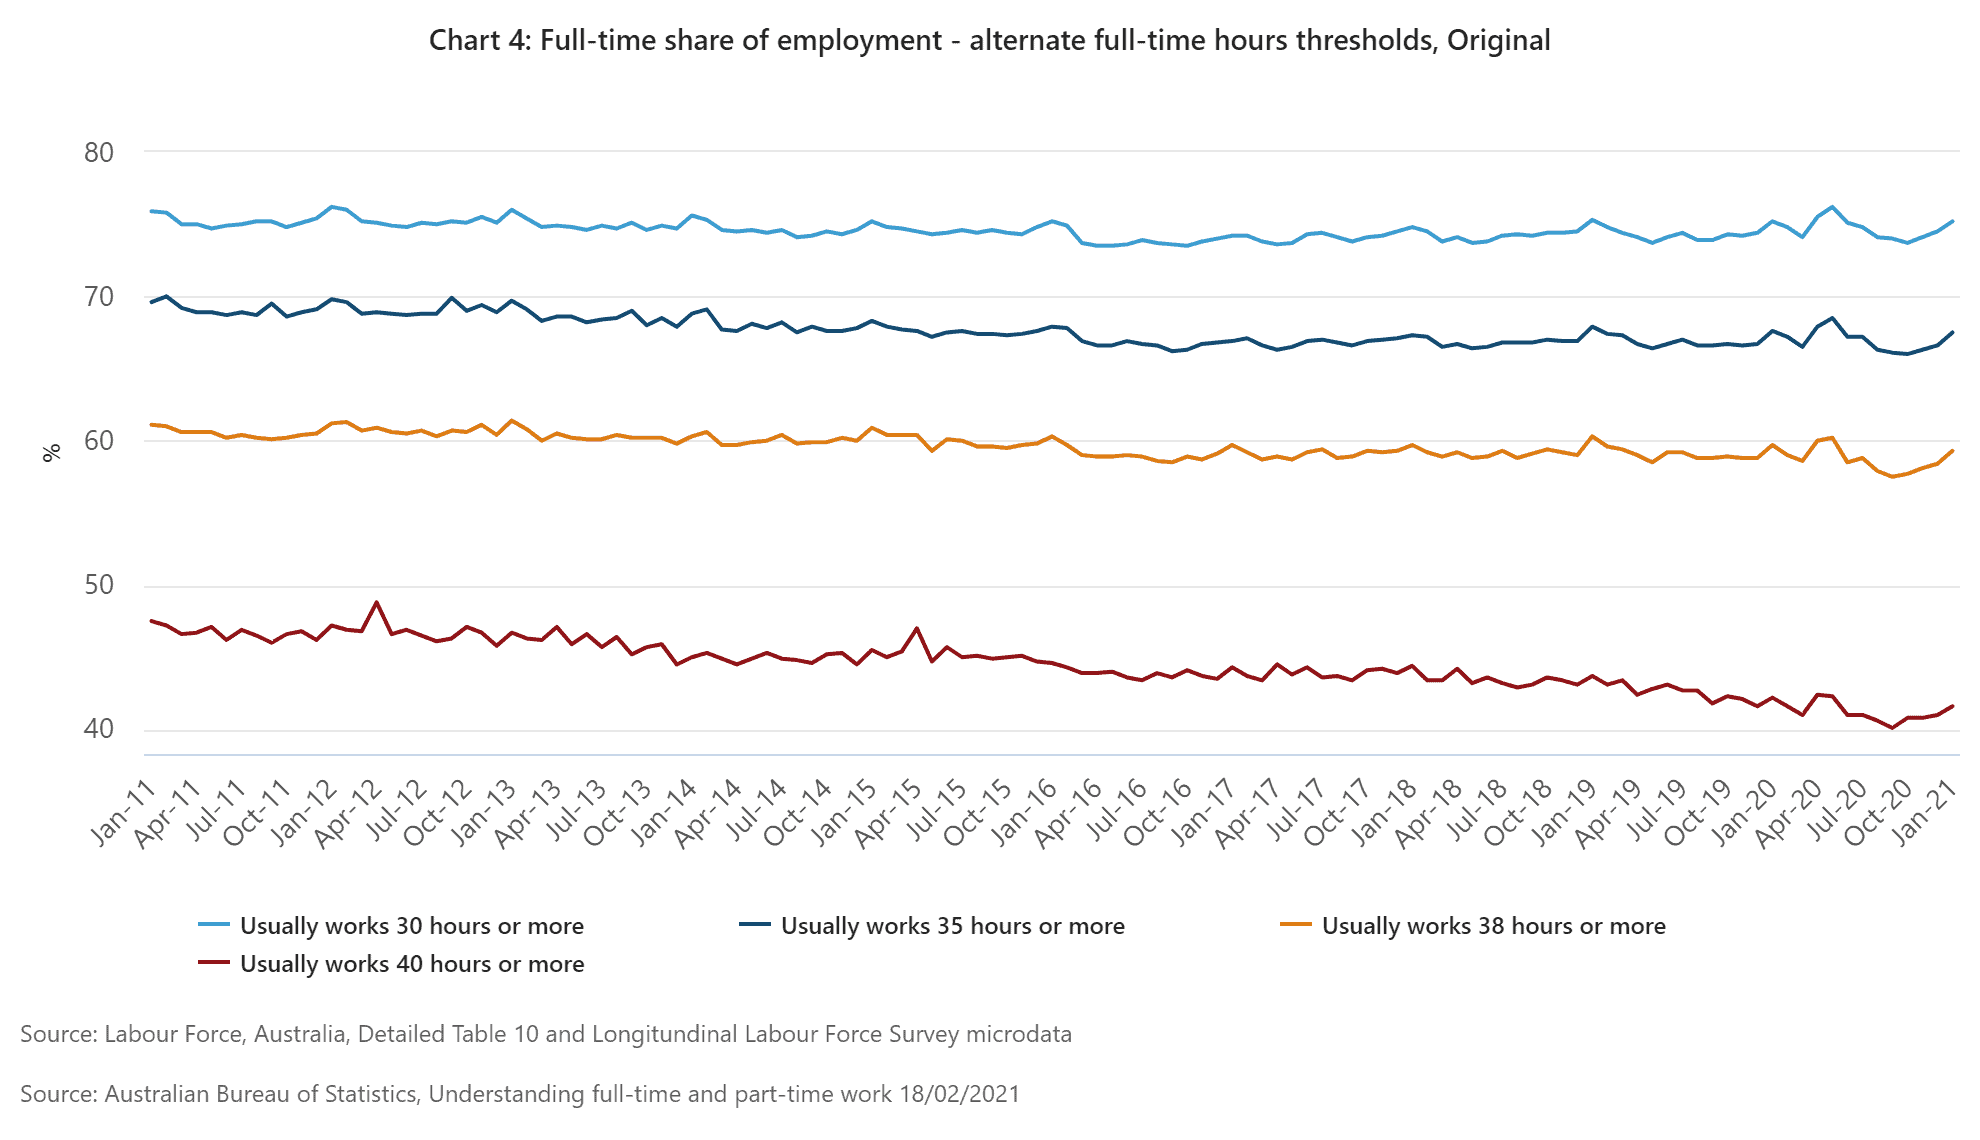 Full-time share of employment - alternate full-time hours thresholds